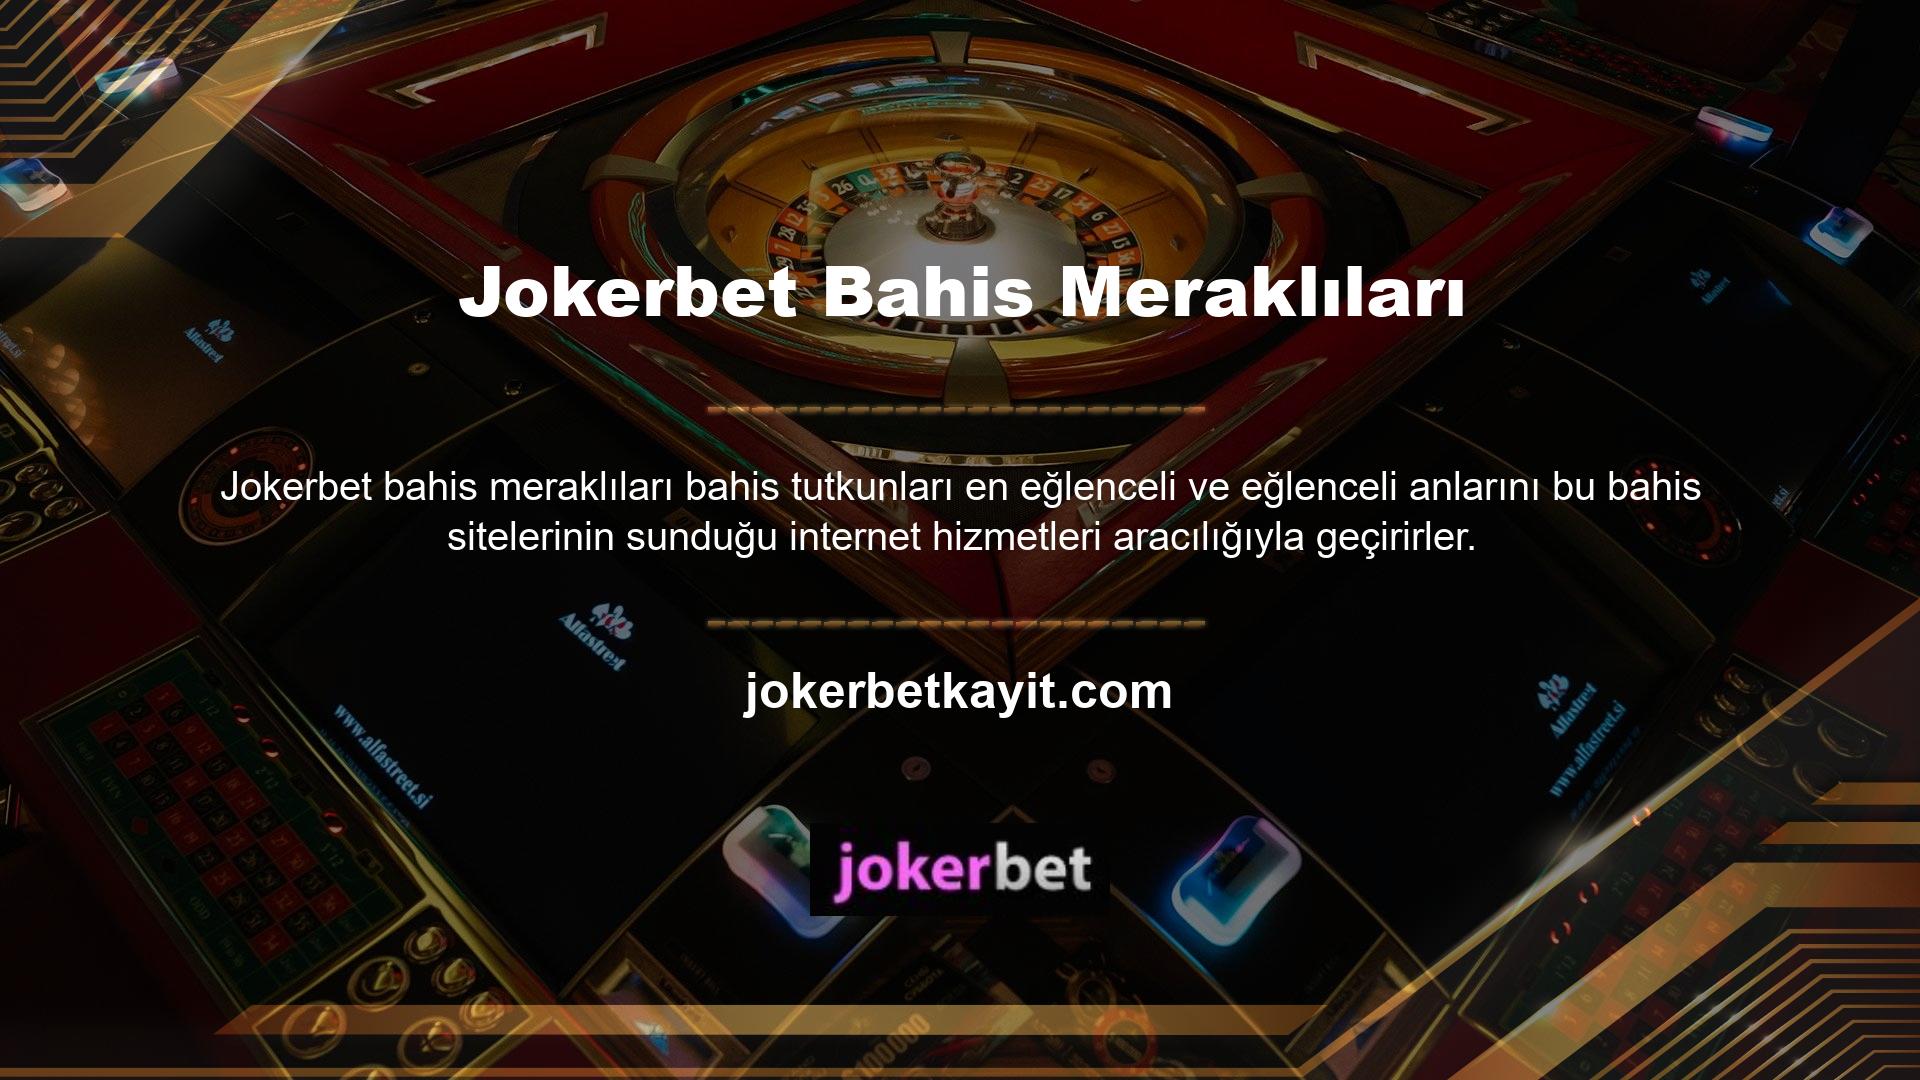 En gelişmiş çevrimiçi casino sitelerinden biri olan Jokerbet, ödeme teknolojisini benimsemeye devam ediyor